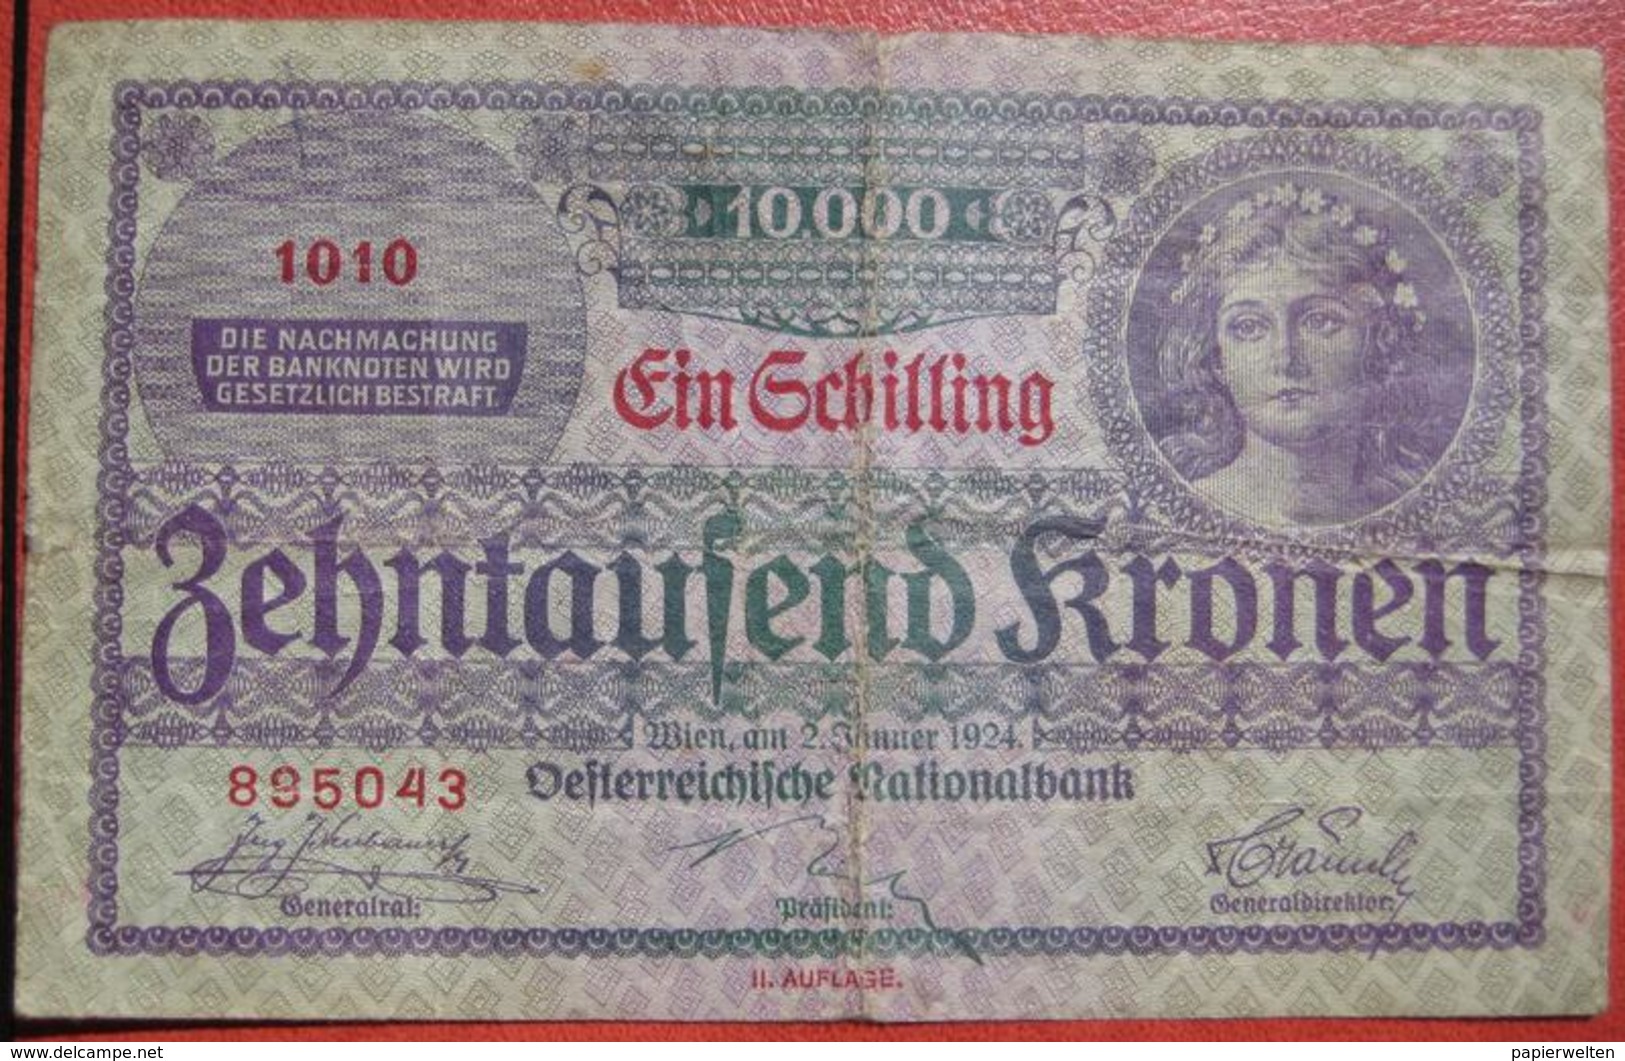 10000 Kronen 2.1.1924 (WPM 87) - Overprint / Überdruck "1 Schilling" - Austria